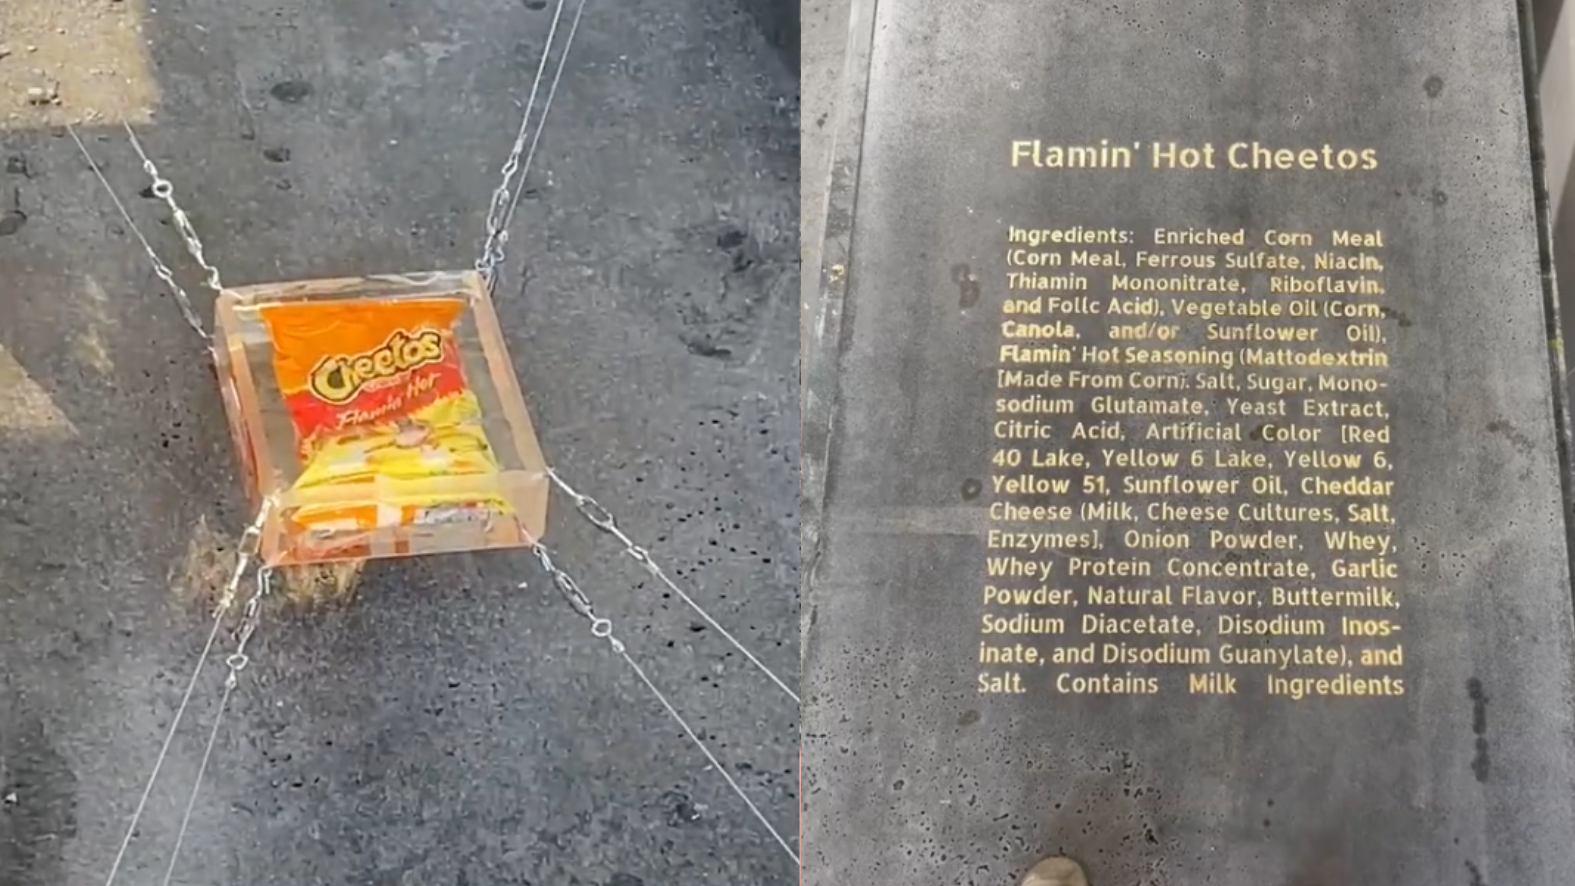 Alien shopping-bag ocean weirdo has glowing Cheetos for guts